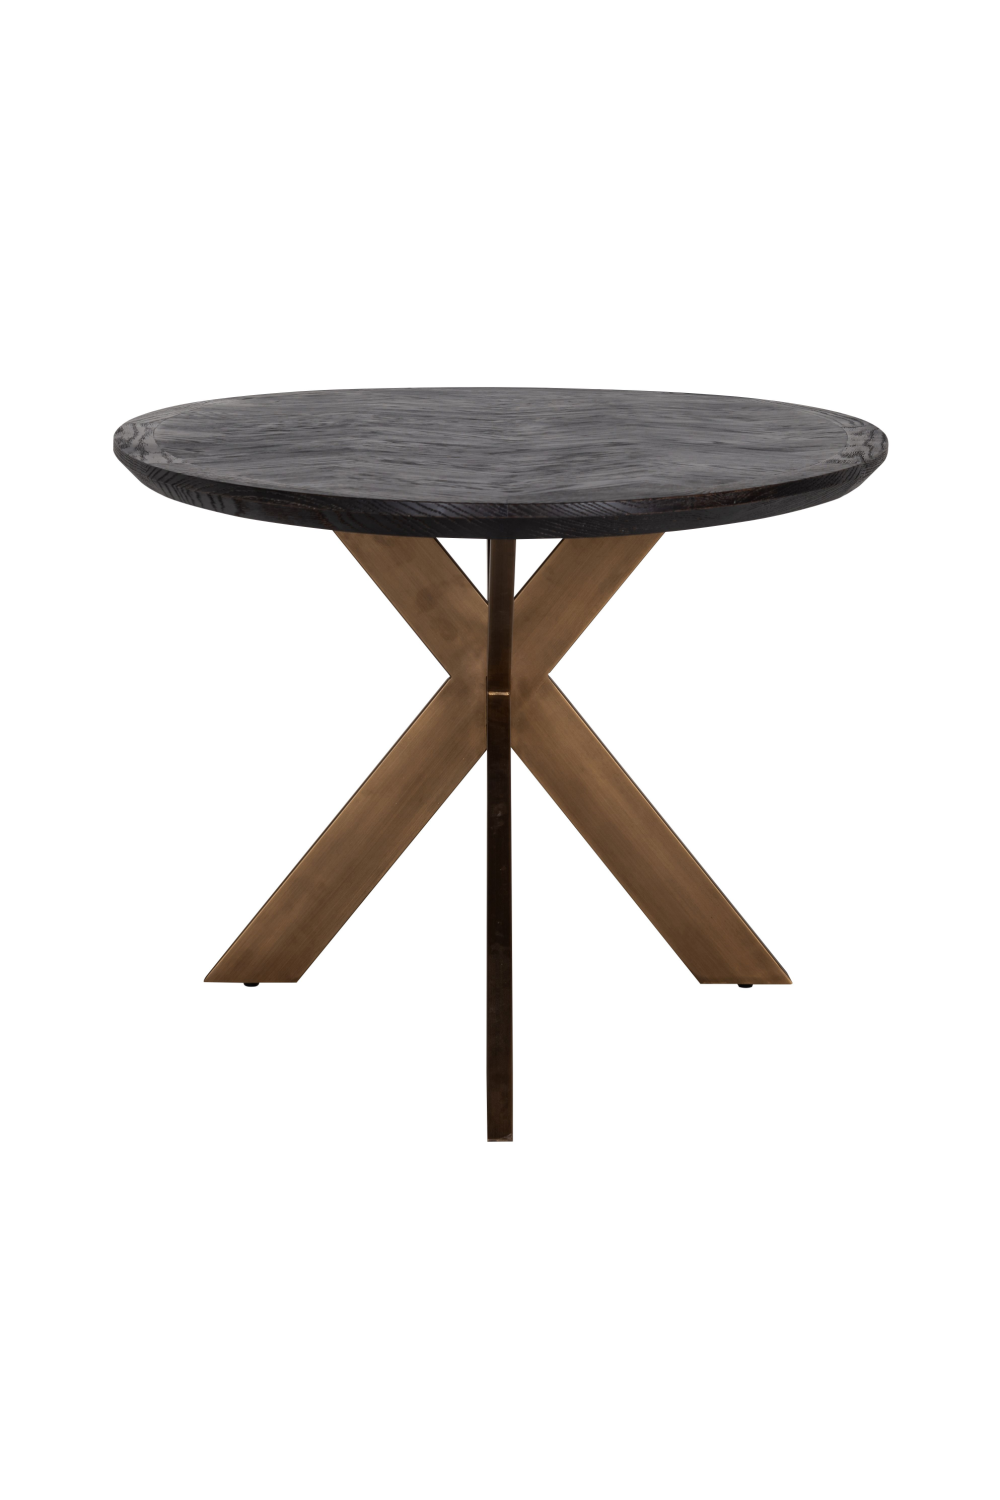 Oval Black Oak Dining Table | OROA Blackbone | Oroa.com